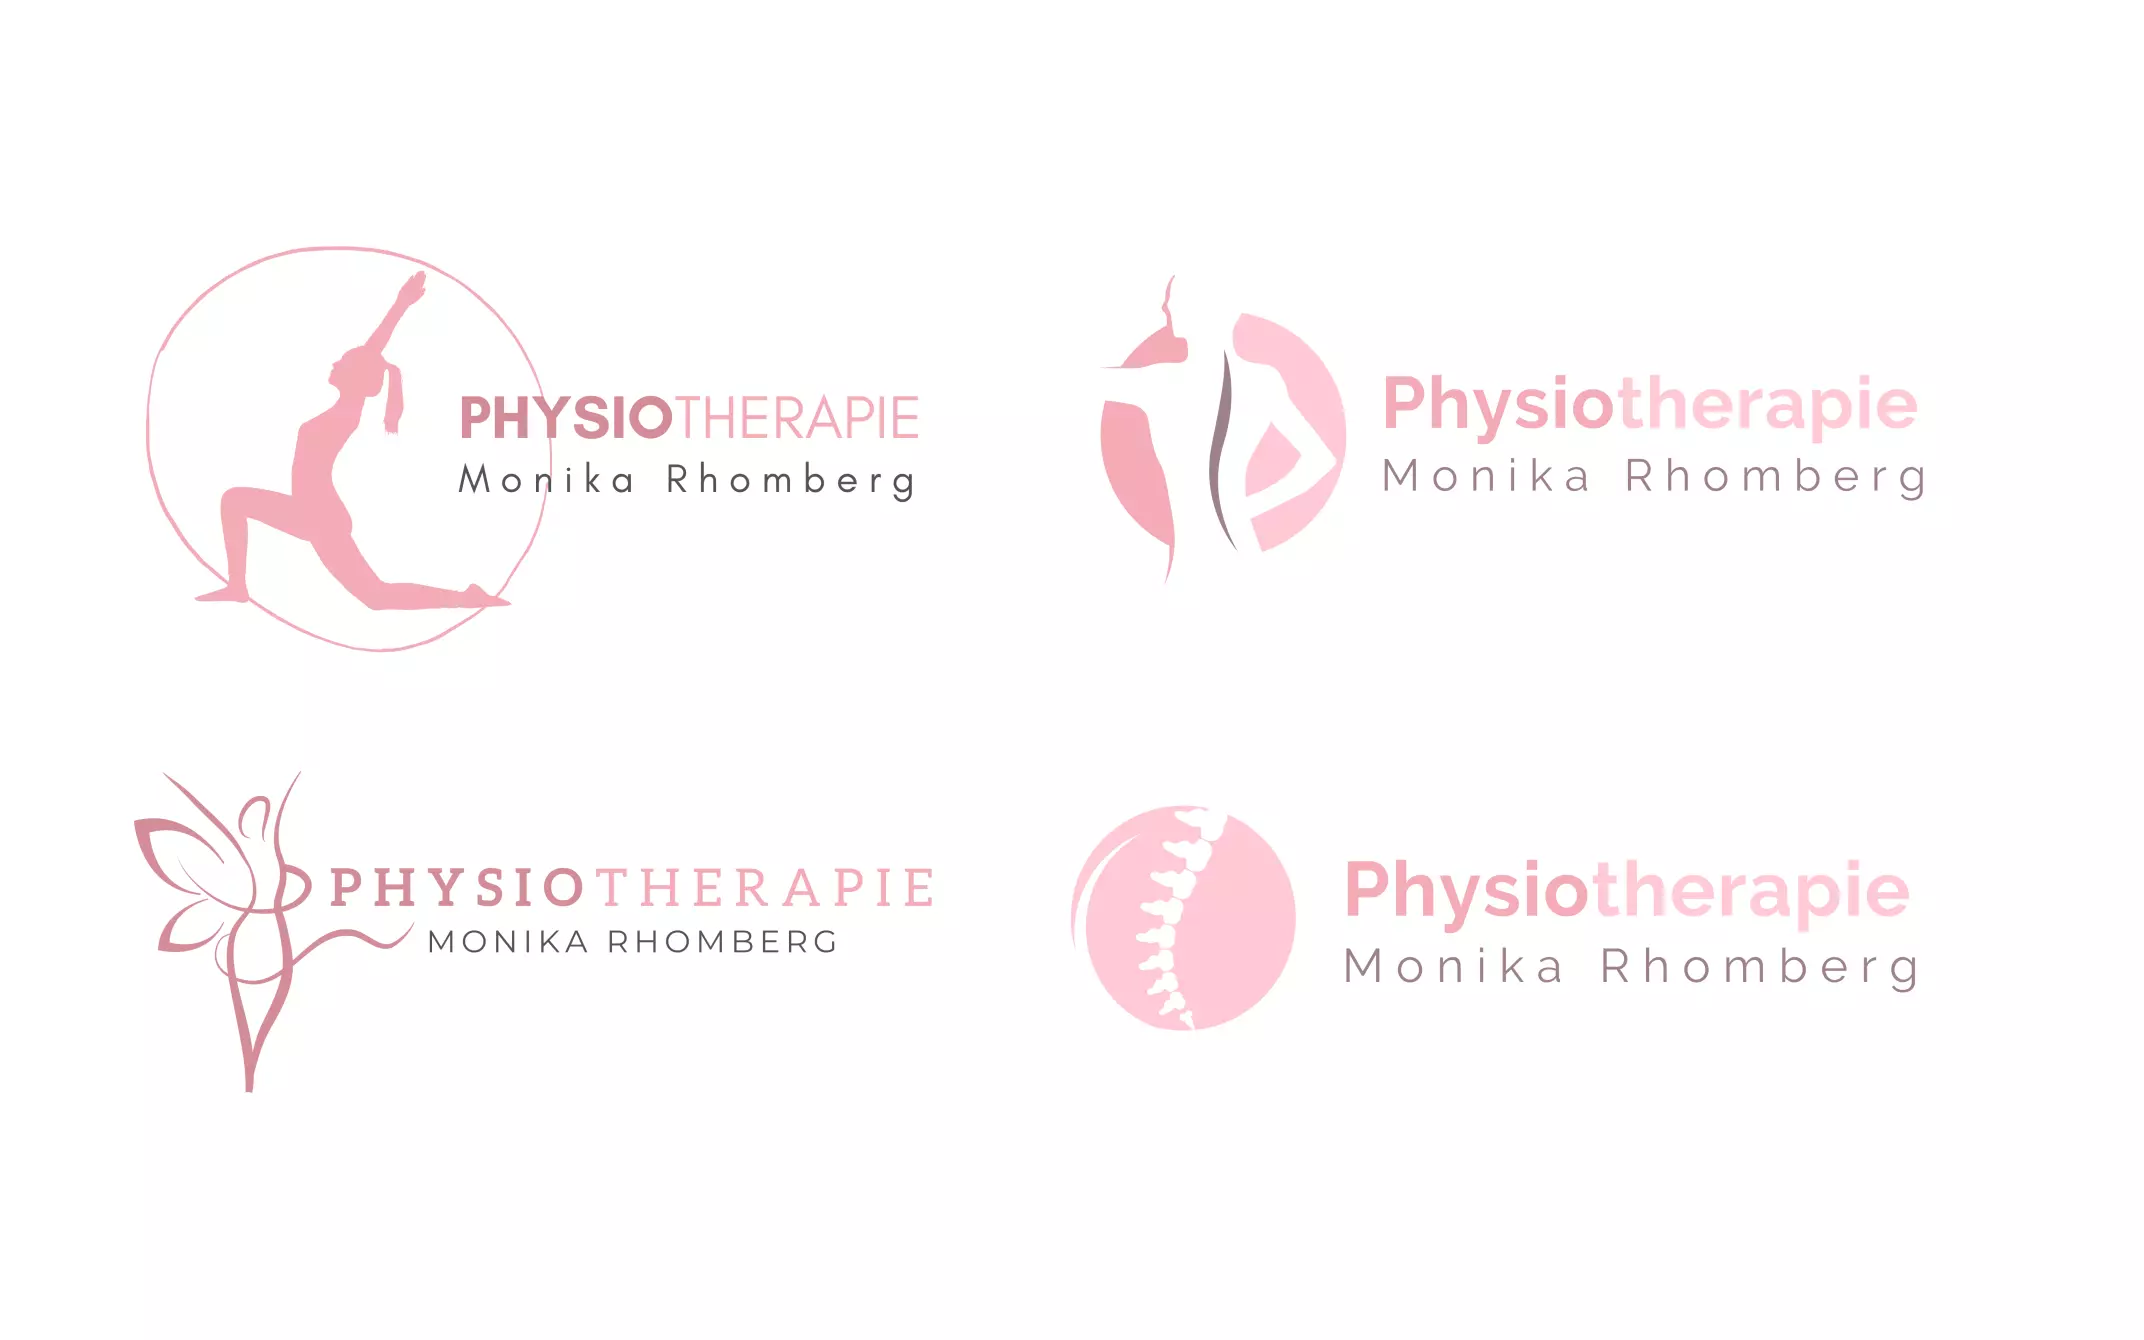 Physiotherapie-Logos für eine Klinik.